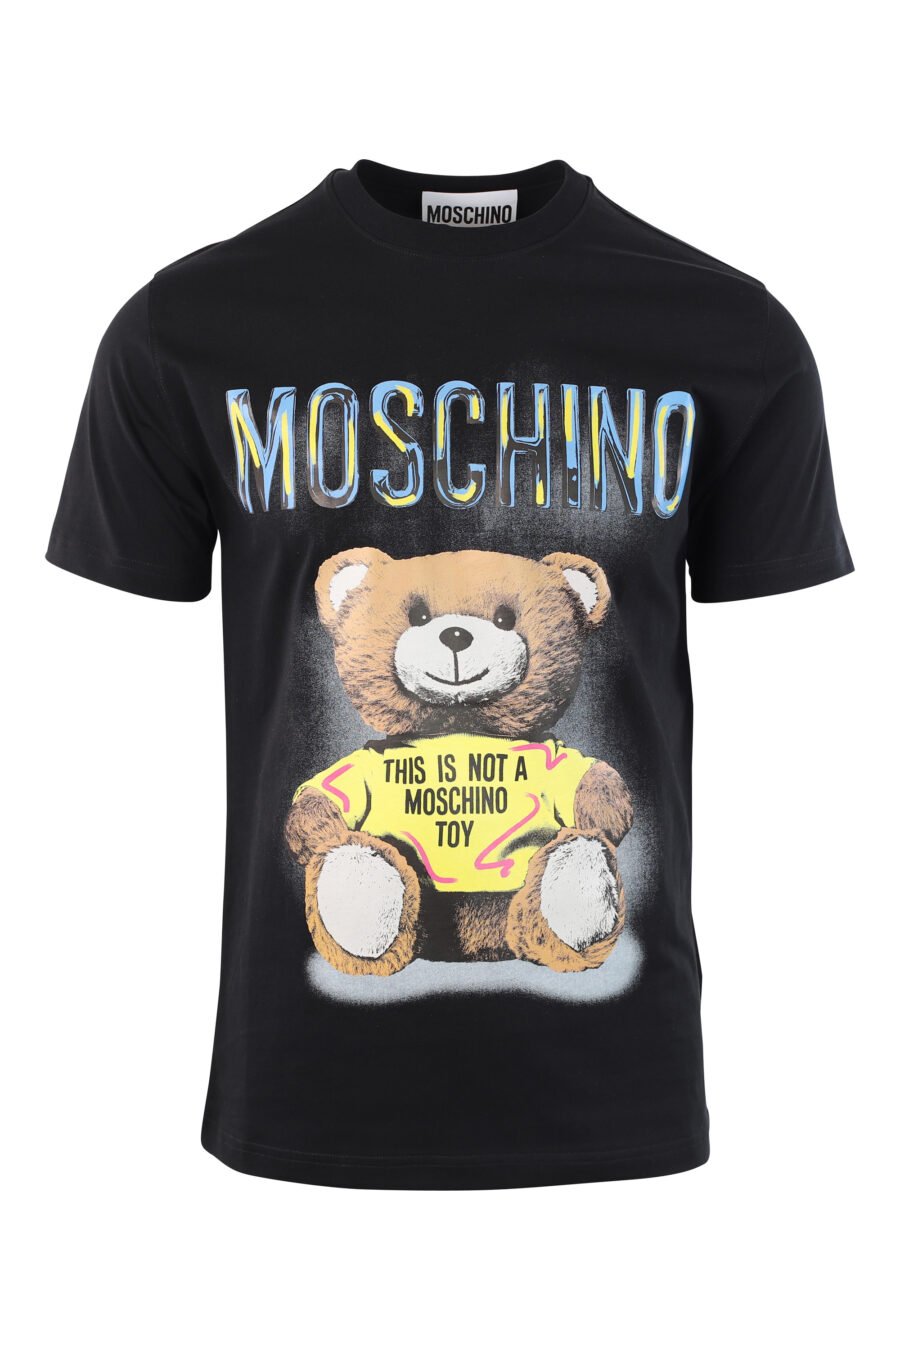 T-shirt preta com urso maxilogo "isto não é um brinquedo moschino" - IMG 3787